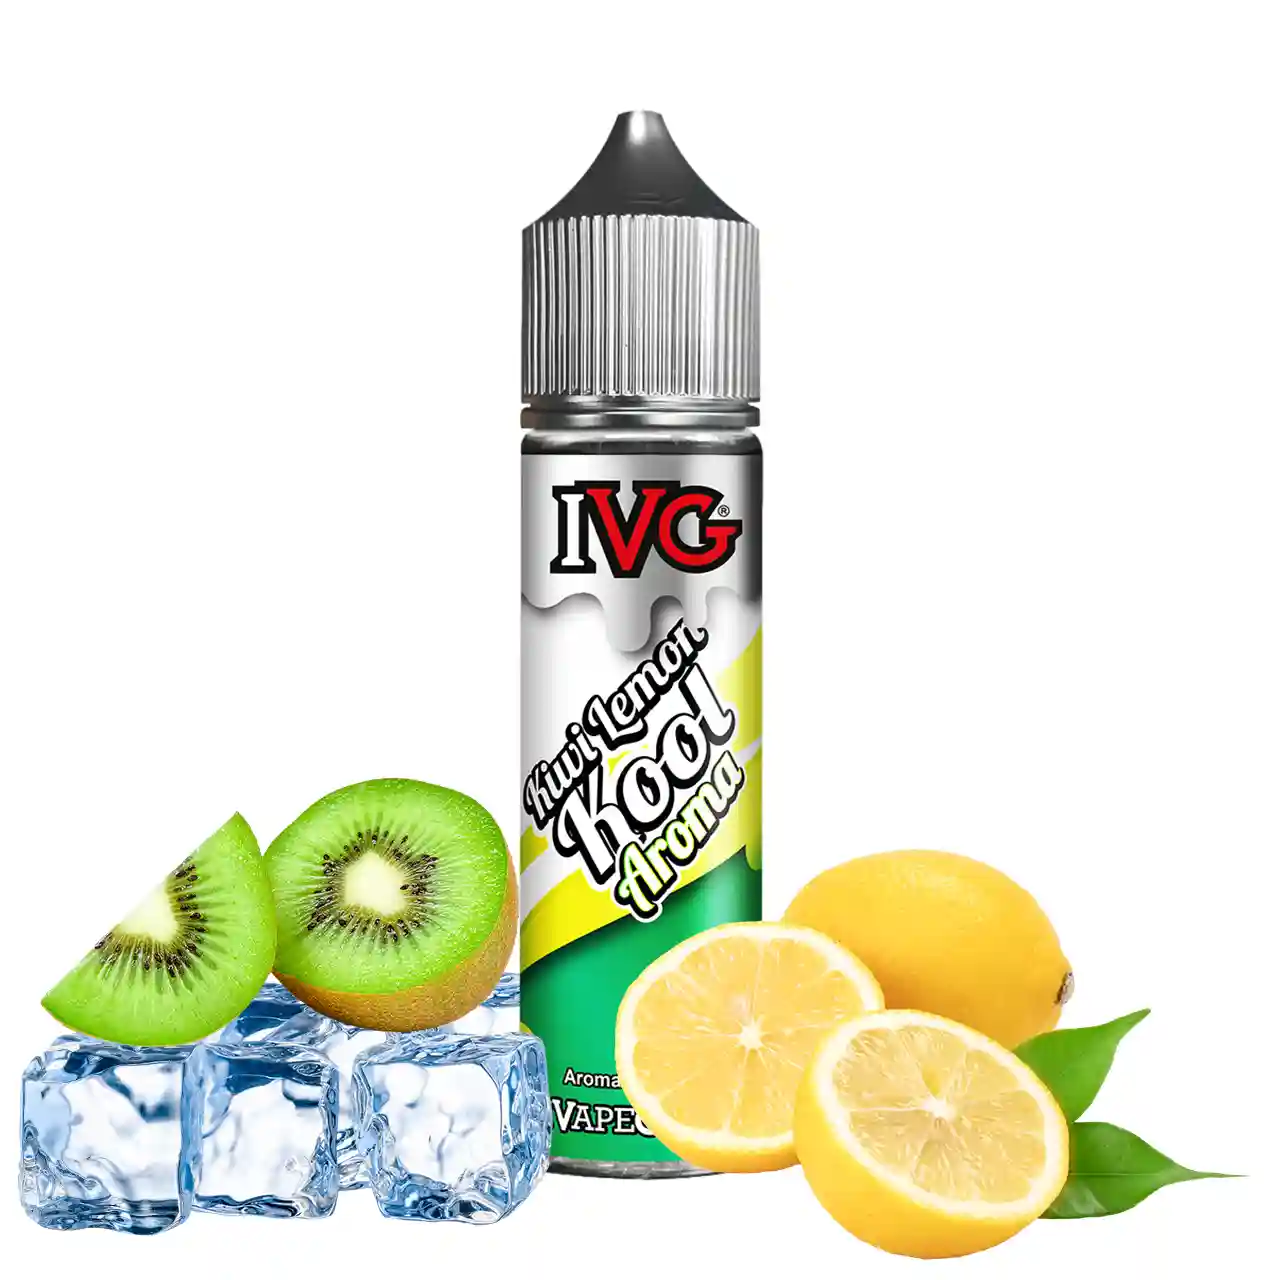 Kiwi Lemon Kool